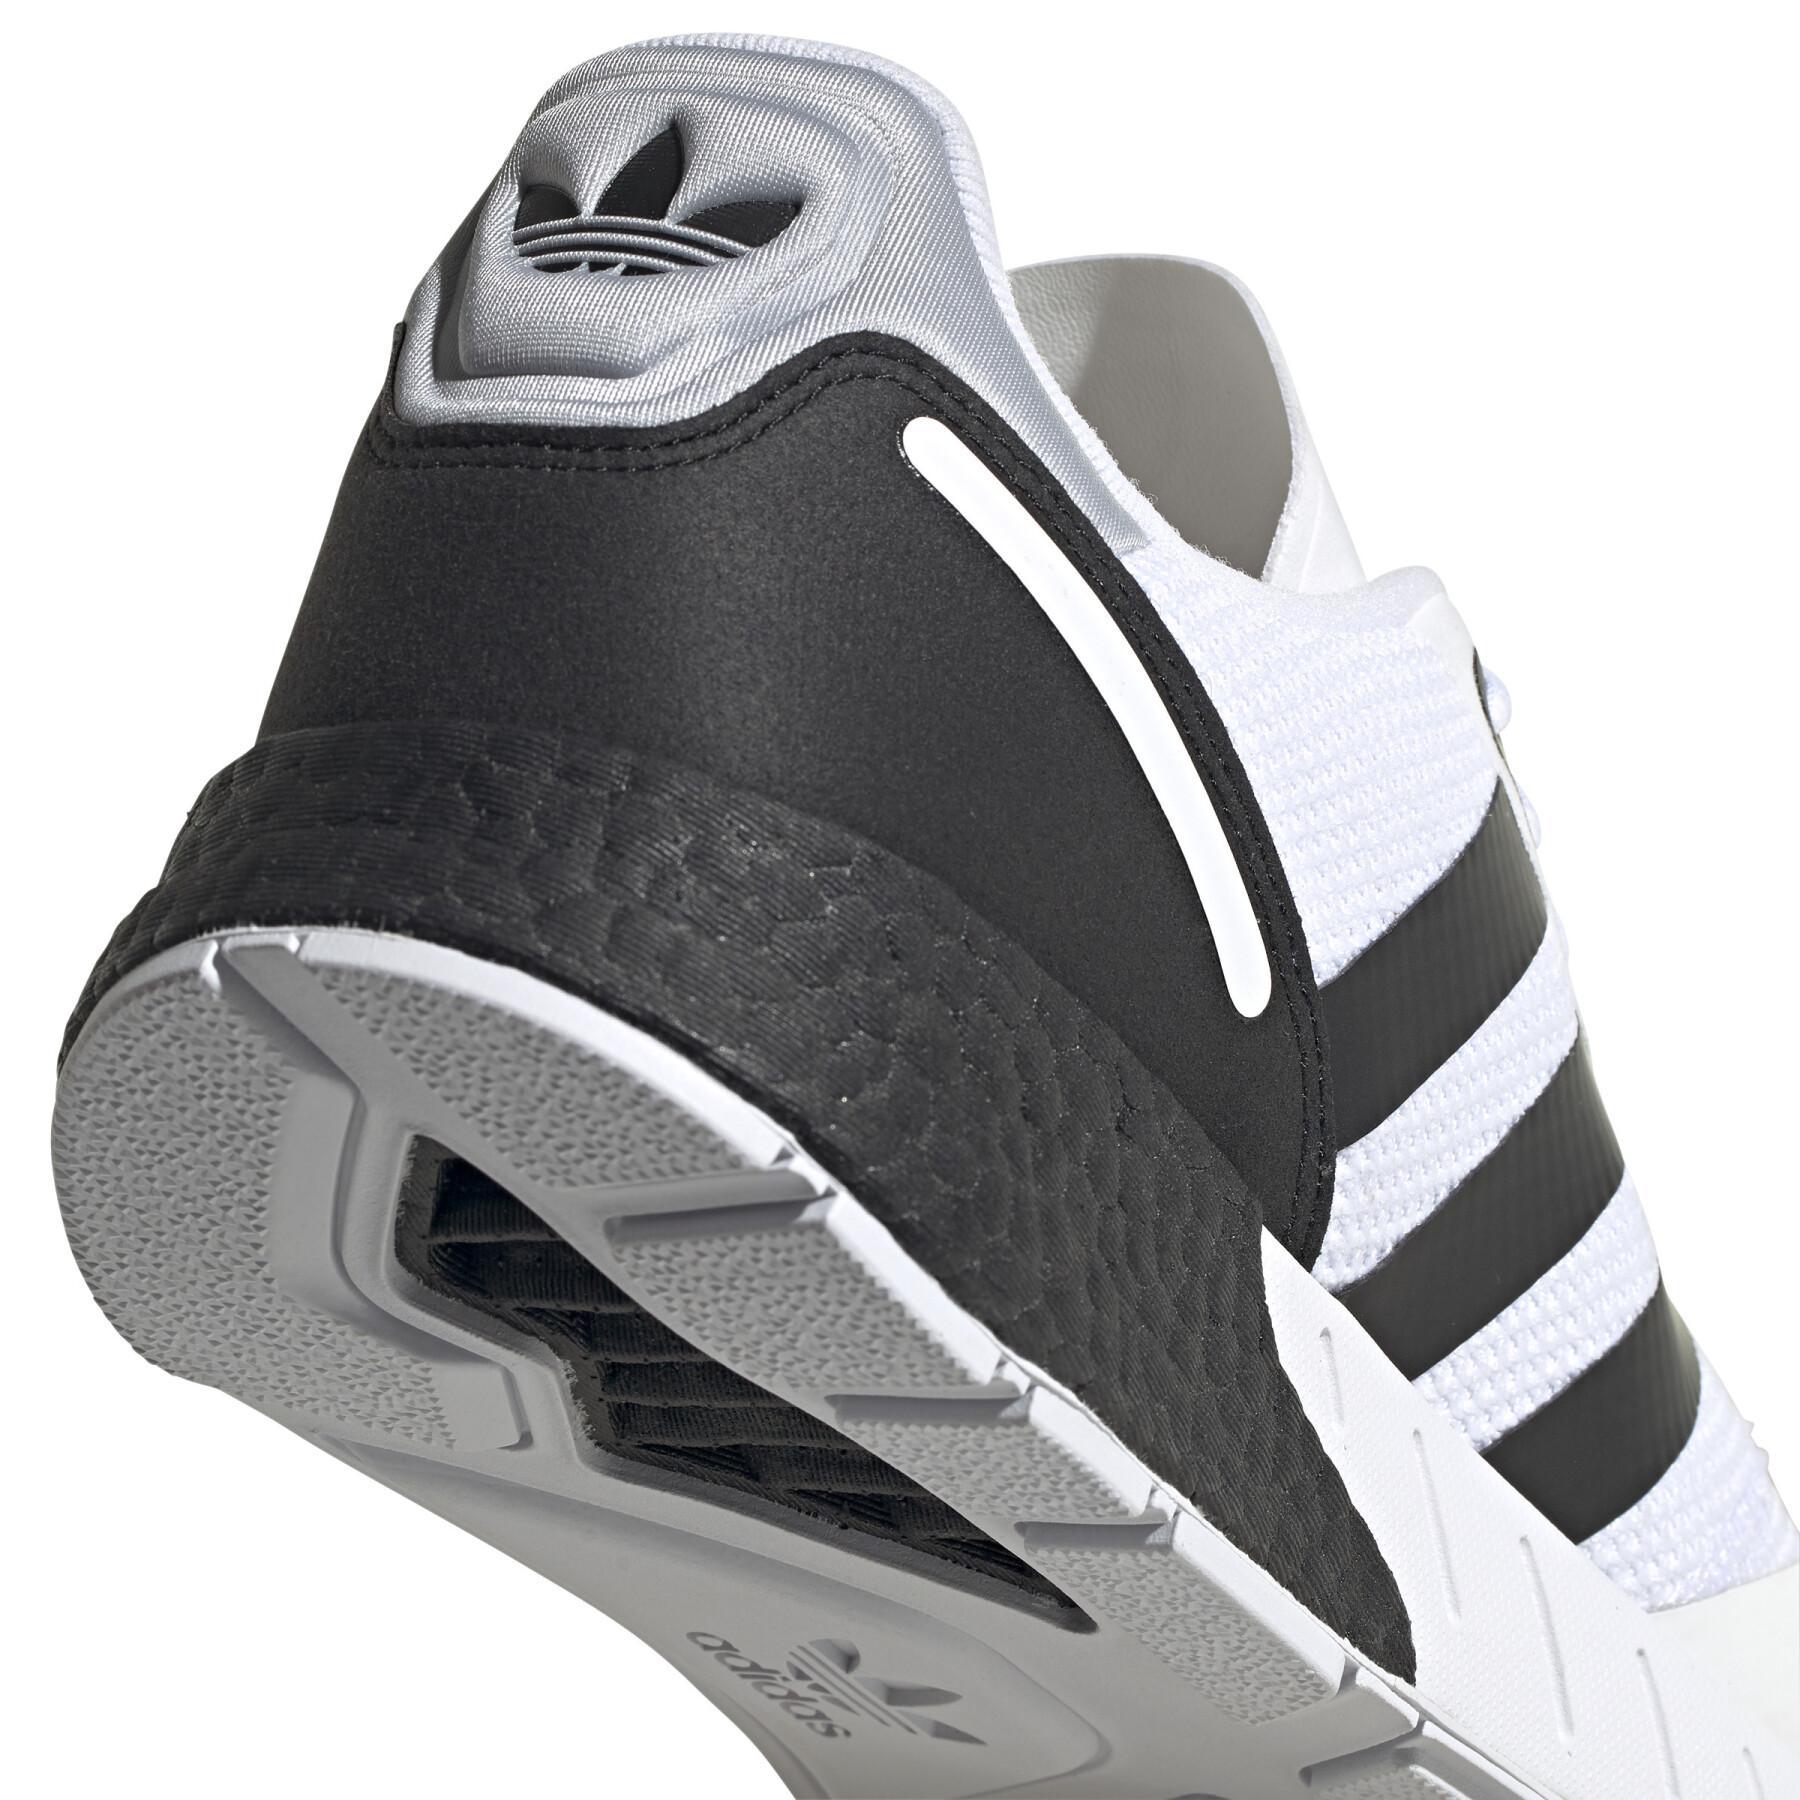 Sneakers adidas Originals ZX 1K Boost